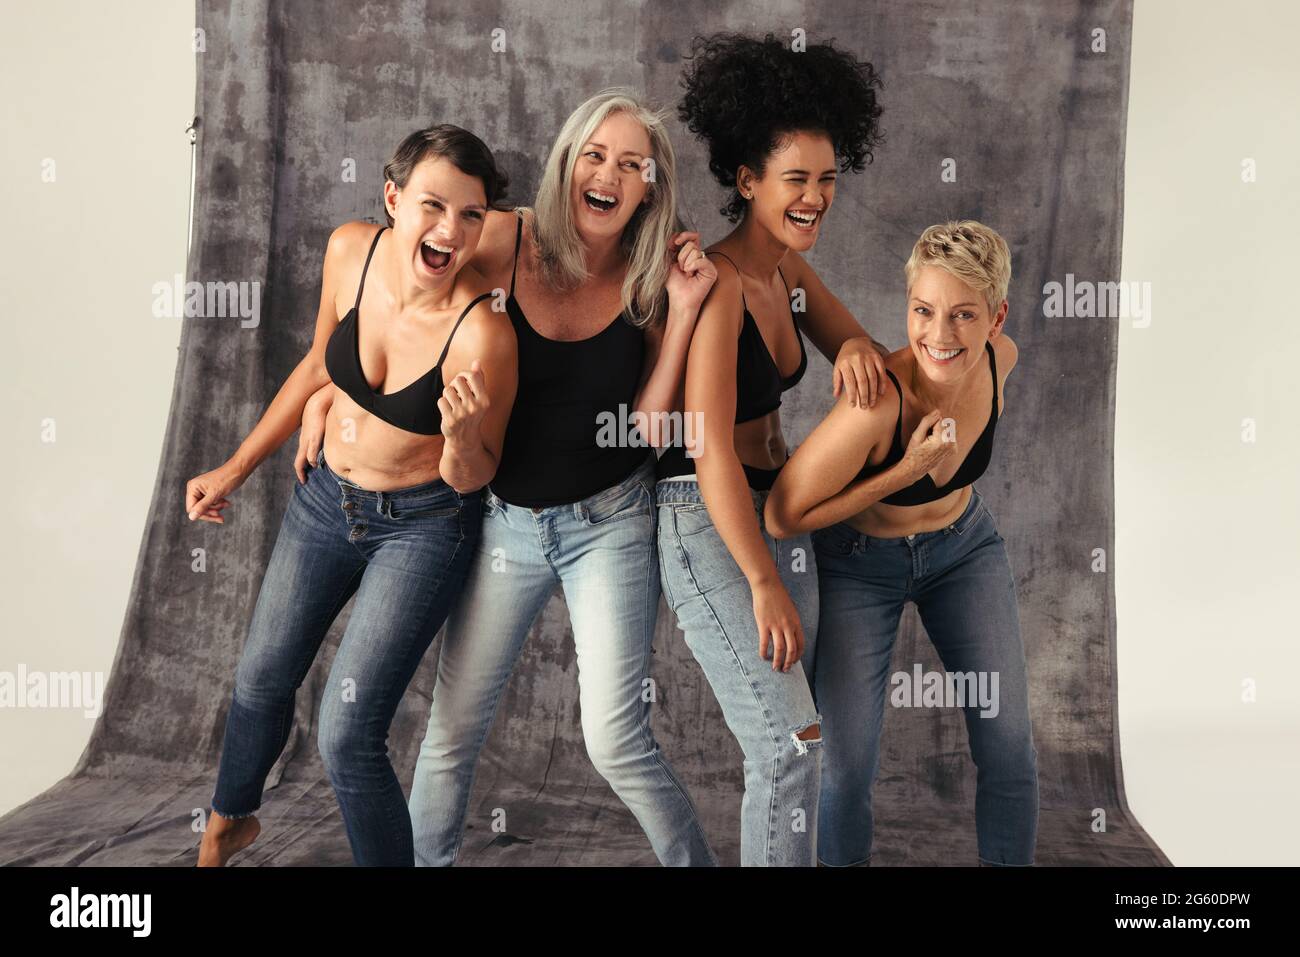 Groupe de femmes diverses s'amusant en portant des jeans et des soutiens-gorge. Quatre femmes positives de corps de différents âges souriant gaiement et célébrant leur na Banque D'Images